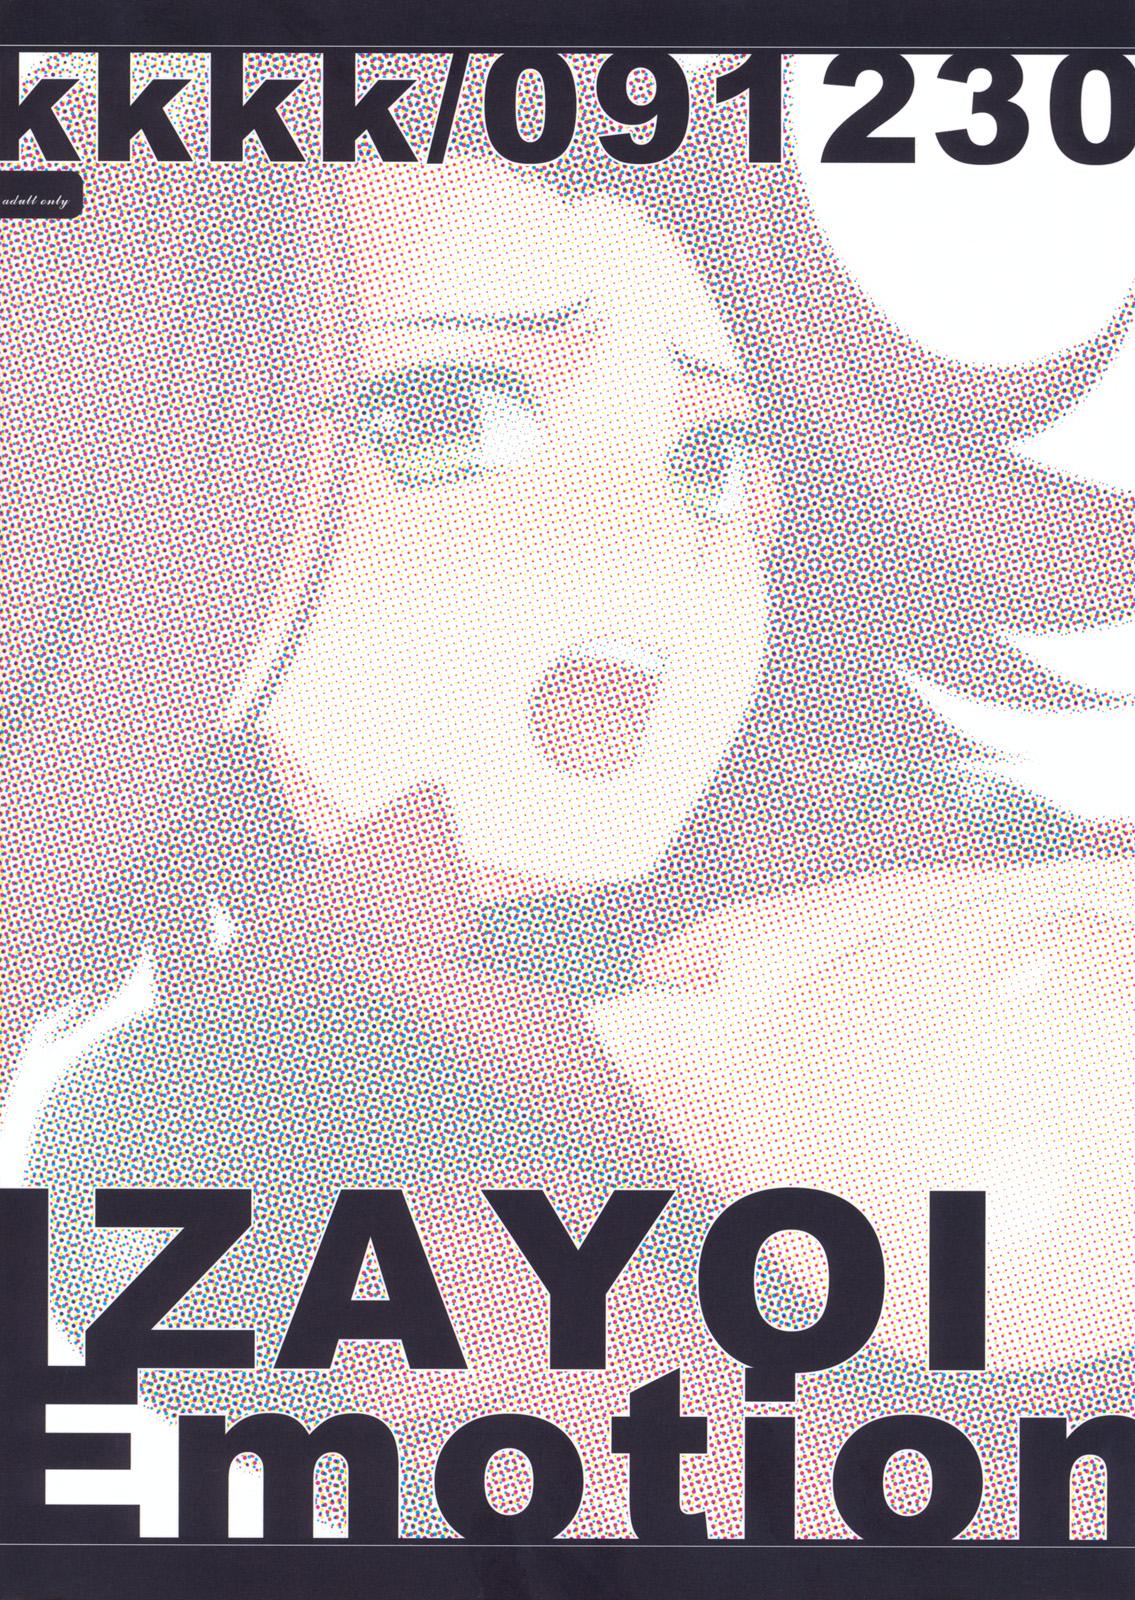 Izayoi Emotion 25